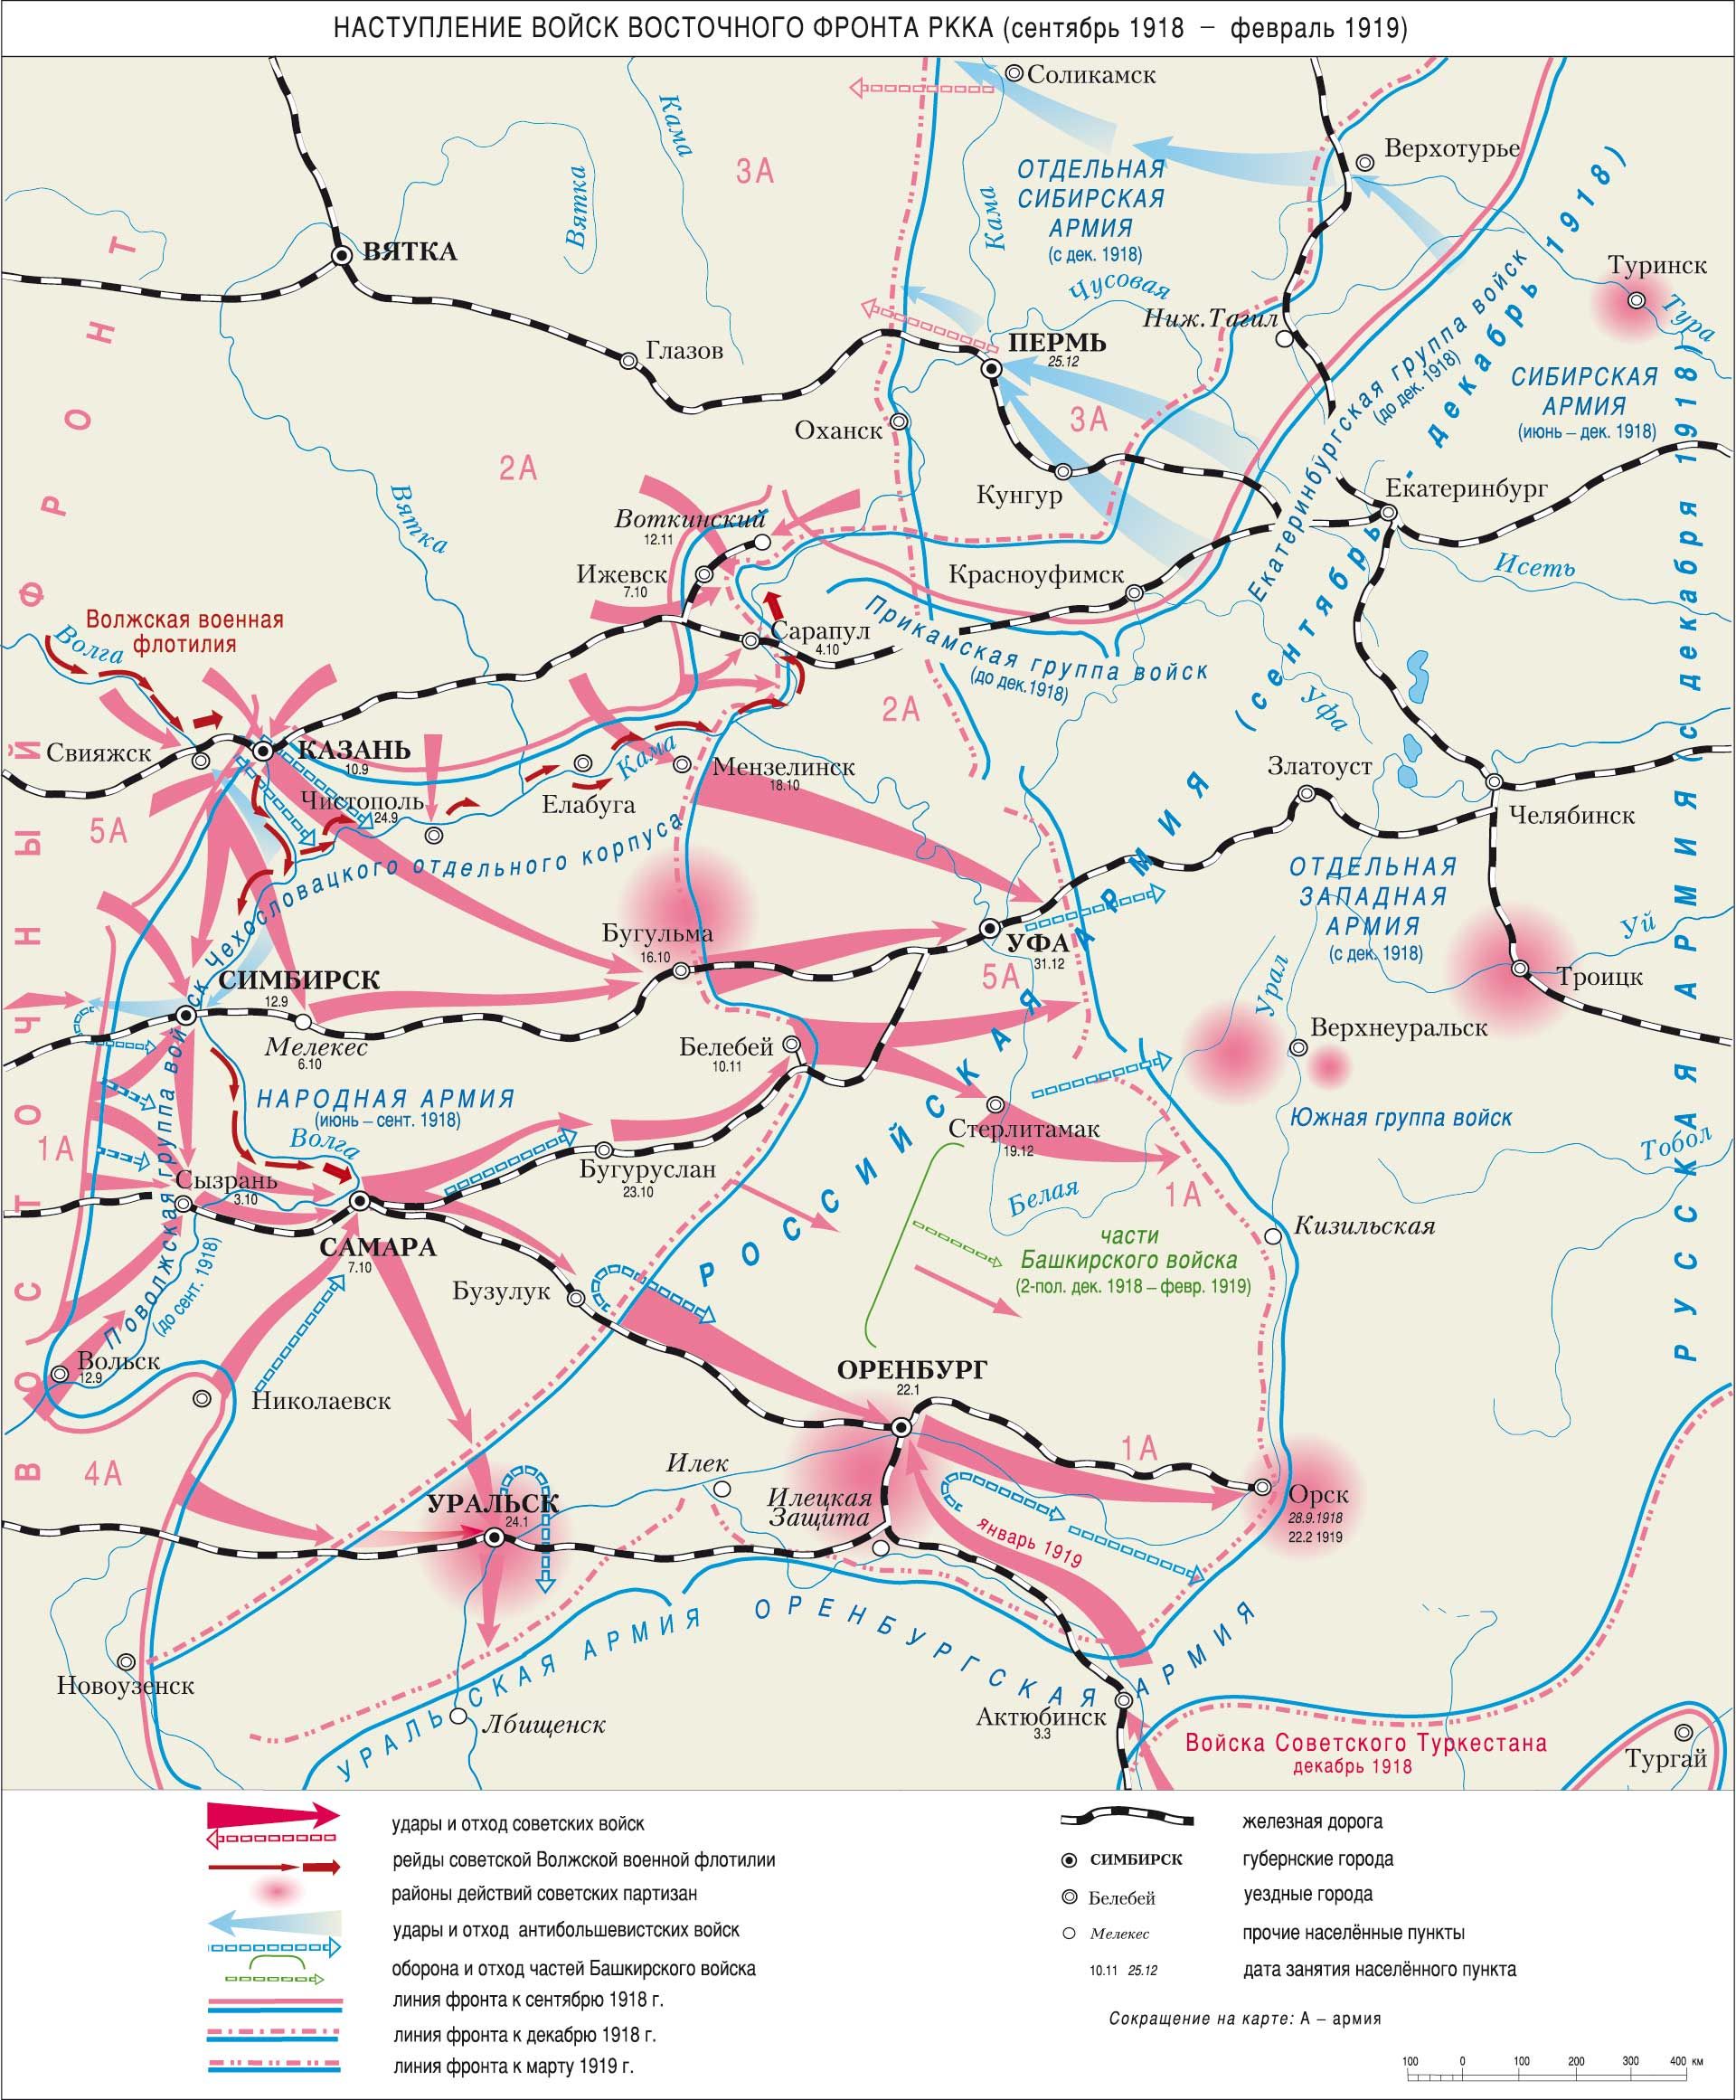 Восточный фронт гражданской войны в России 1918